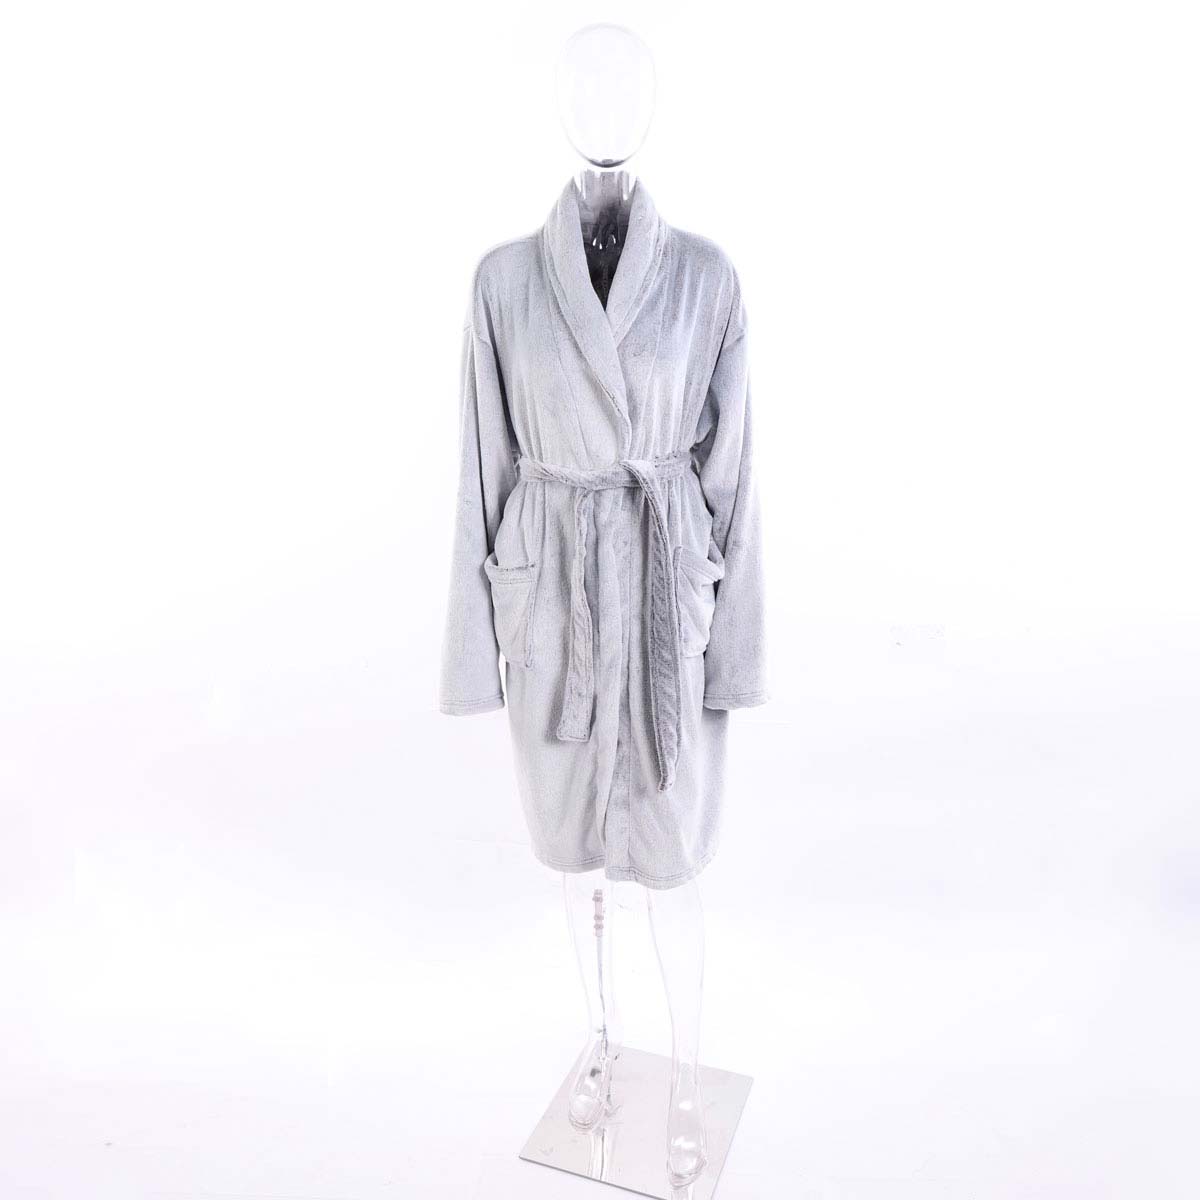 Комплект с халатом Daisy цвет: серый (44-46) ar621512 Комплект с халатом Daisy цвет: серый (44-46) - фото 1